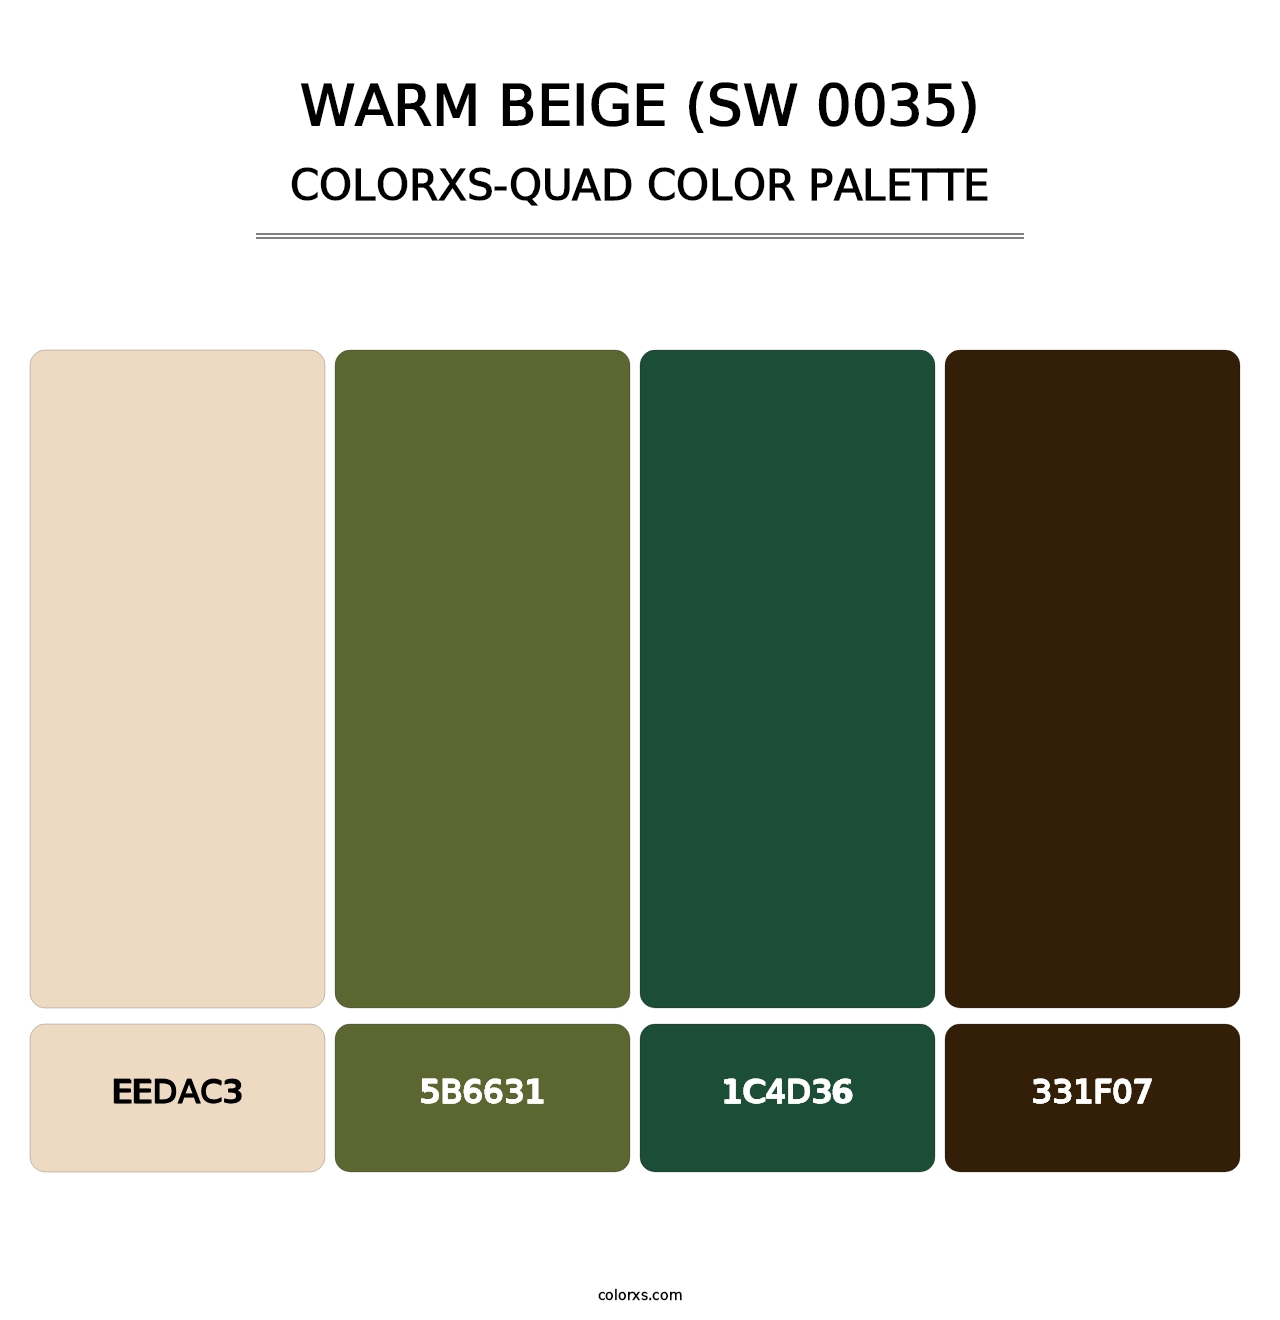 Warm Beige (SW 0035) - Colorxs Quad Palette